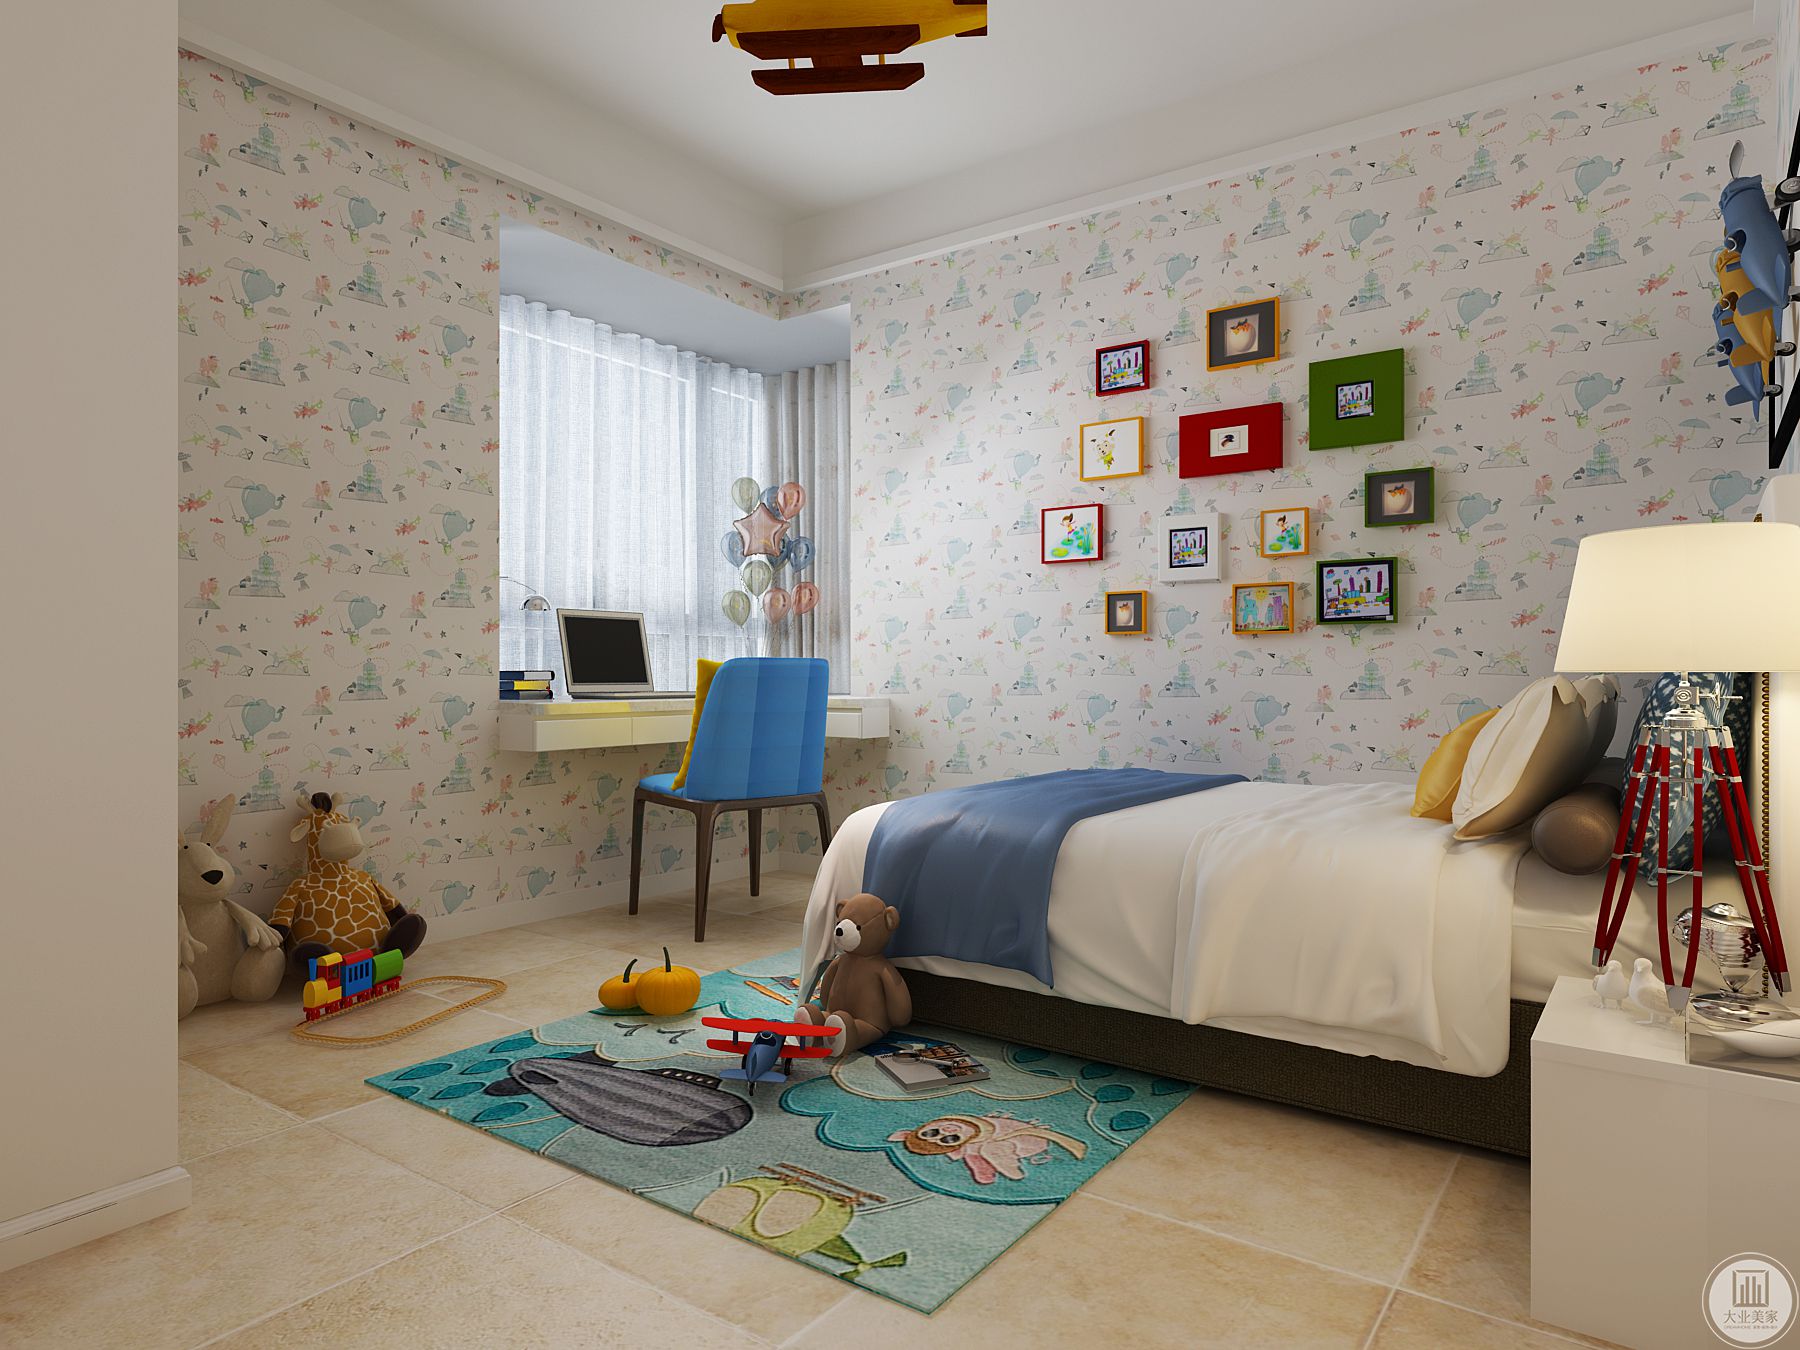 儿童房效果图-儿童房的设计整体淡淡的蓝色映入眼帘，墙体的壁布也以白色的打底蓝色的图案铺贴，更为亮眼的是房间的主灯为飞机的形状，整体的儿童房设计既有特点又有温馨的感觉，开发孩子趣味性。